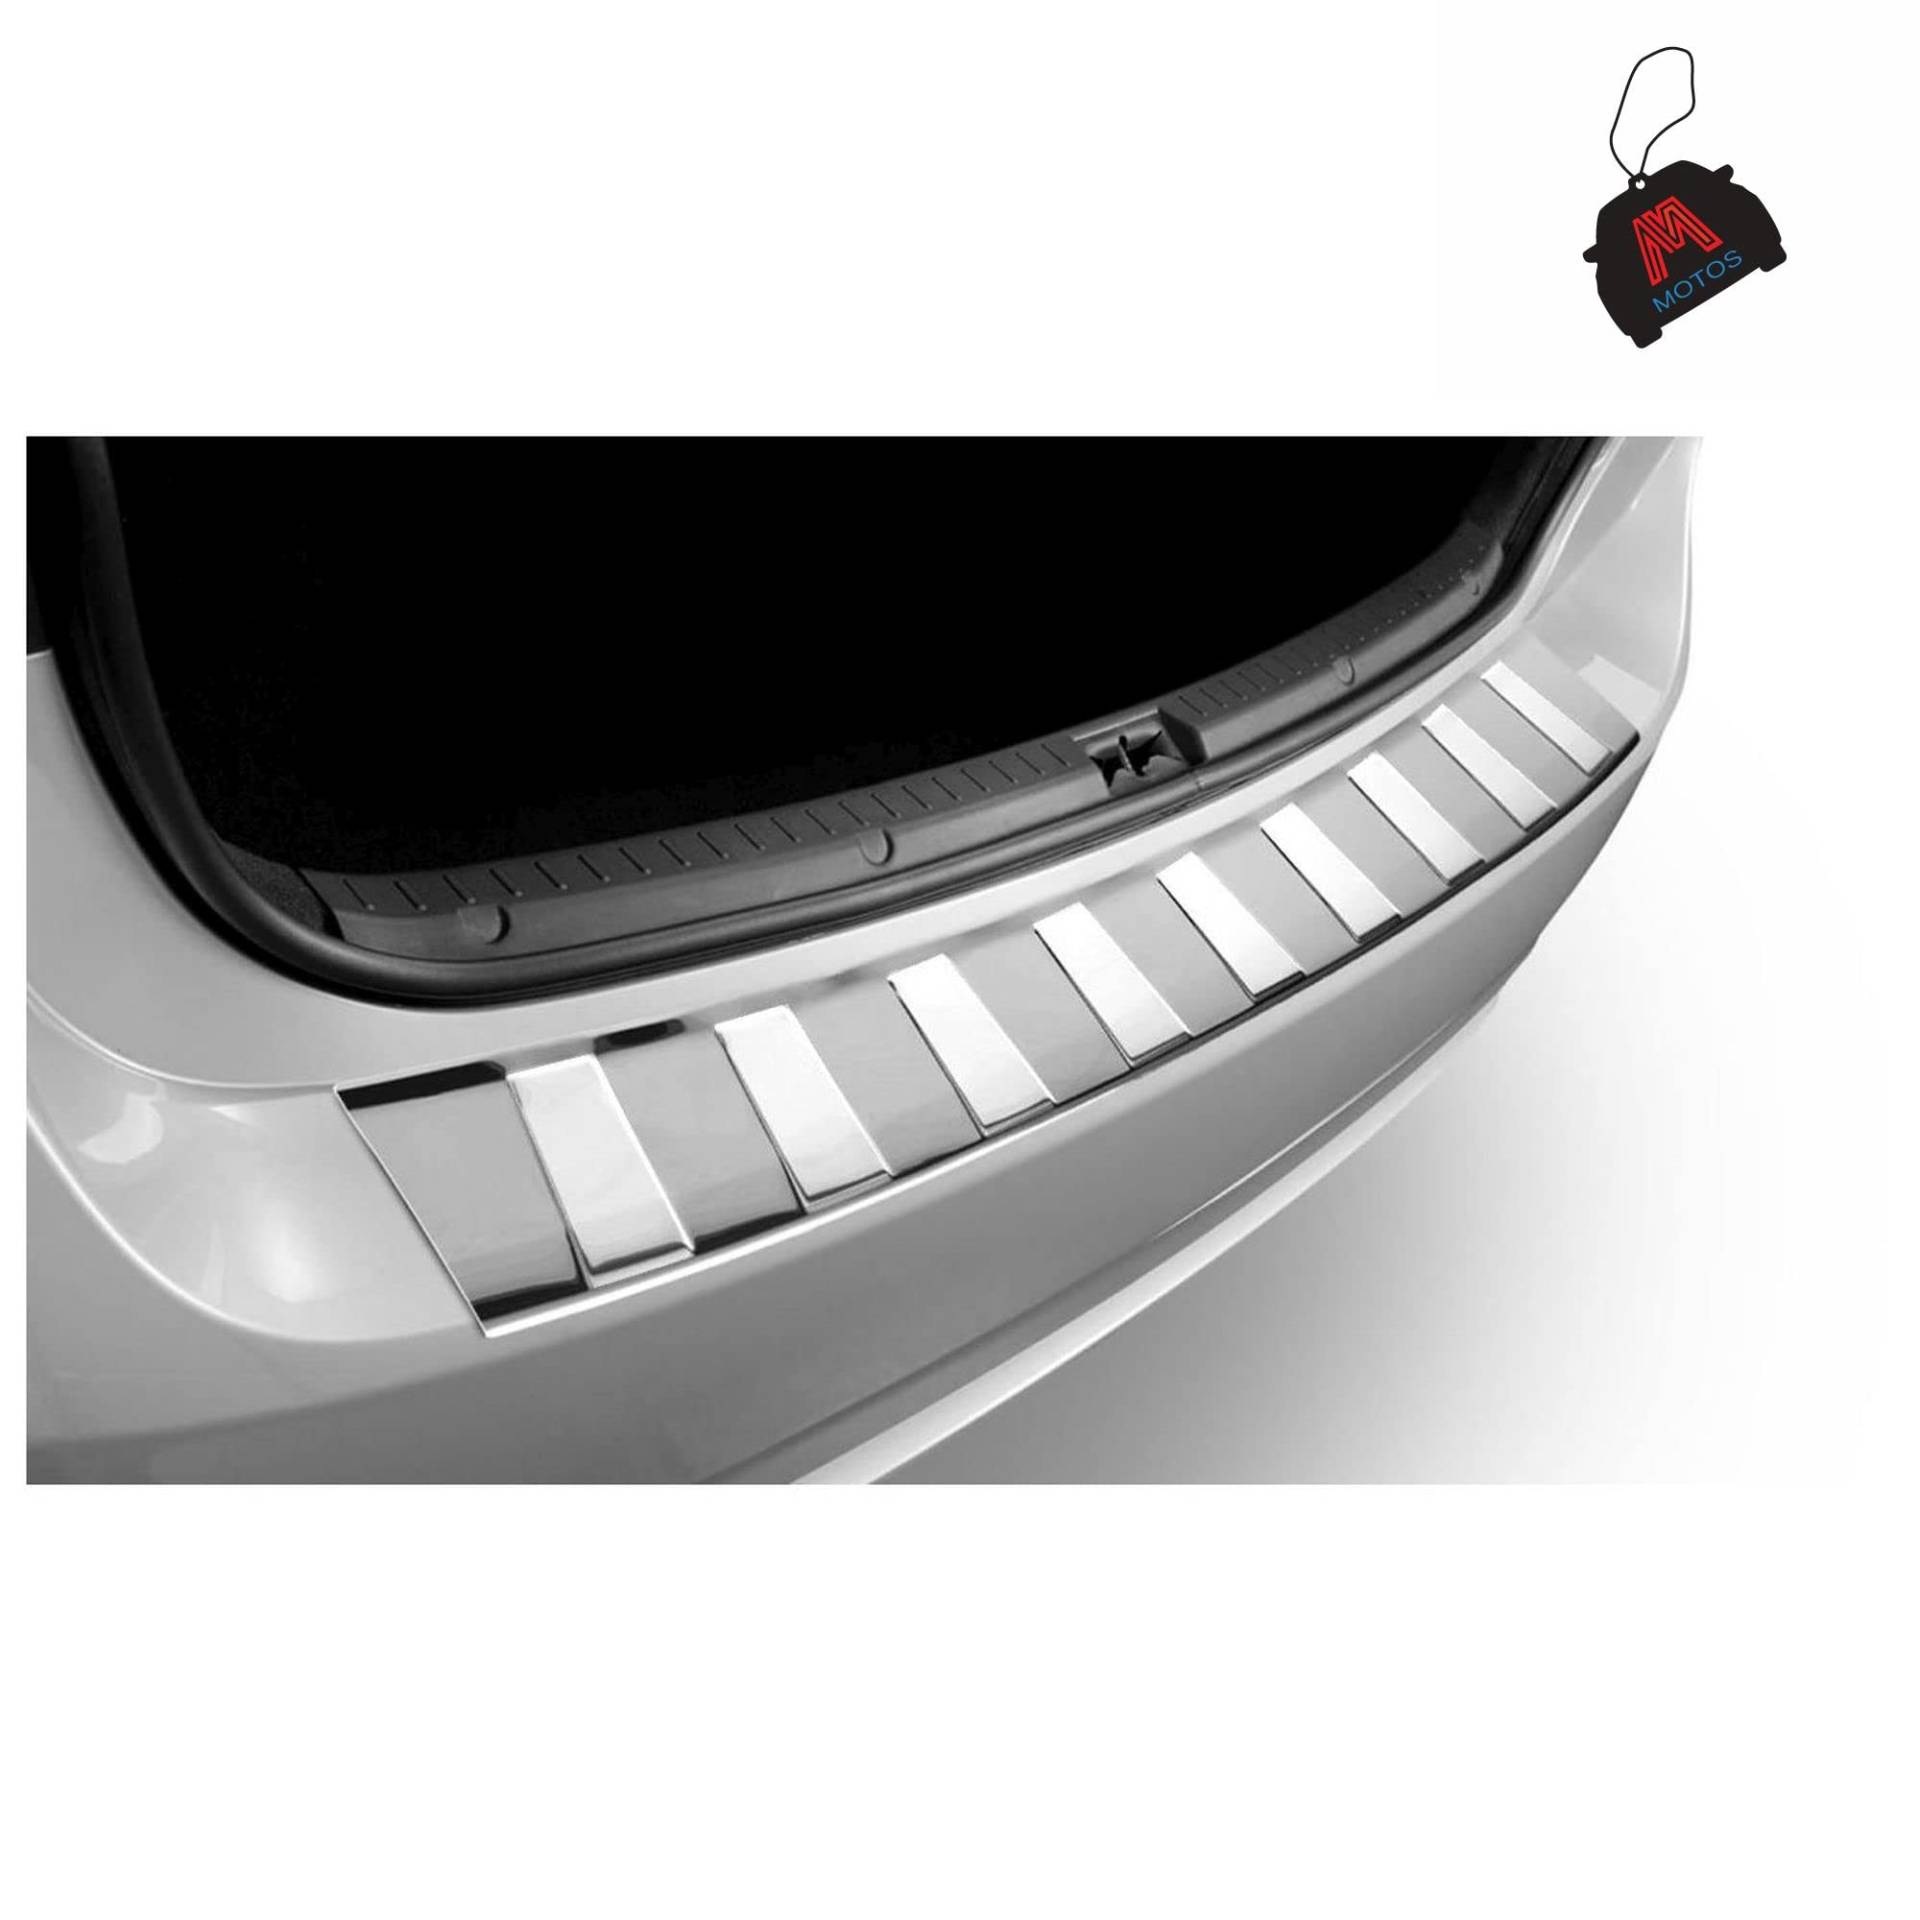 M MOTOS Satin Edelstahl-Ladekantenschutz für Toyota Prius III FL 2012-2016 5 -türig. Erhöhter Fahrkomfort mit säurefesten Schwellerplatten - Kratzschutz von M MOTOS